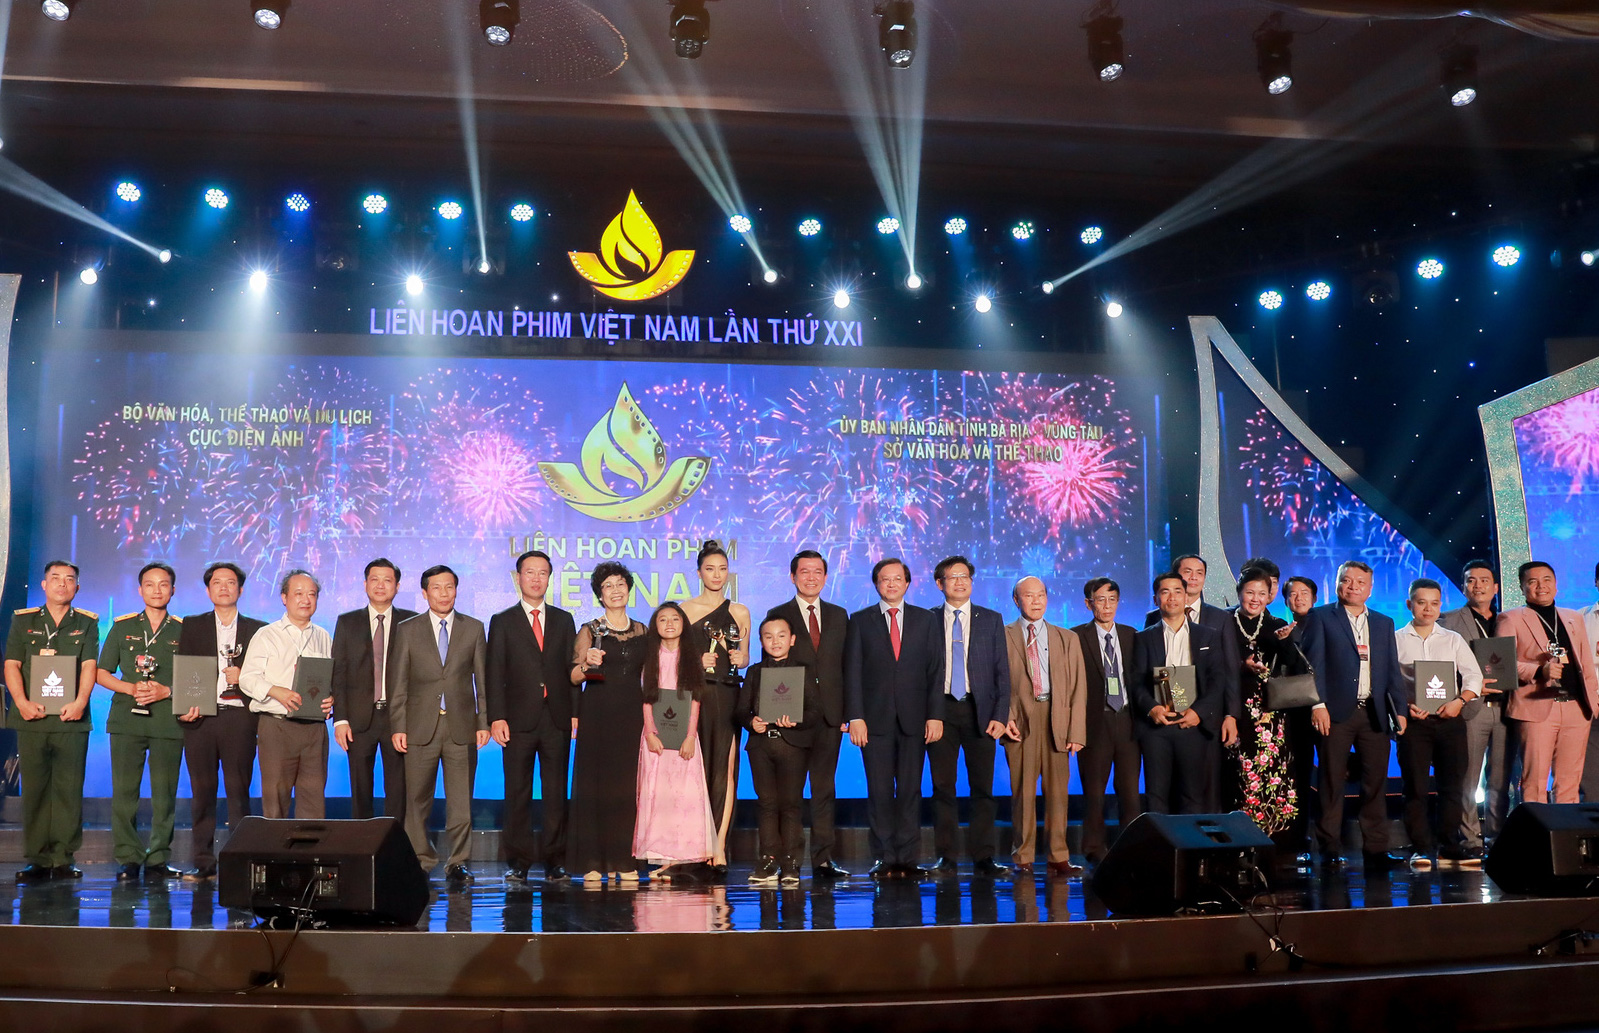 Xây dựng Liên hoan Phim Việt Nam trở thành thương hiệu quốc gia